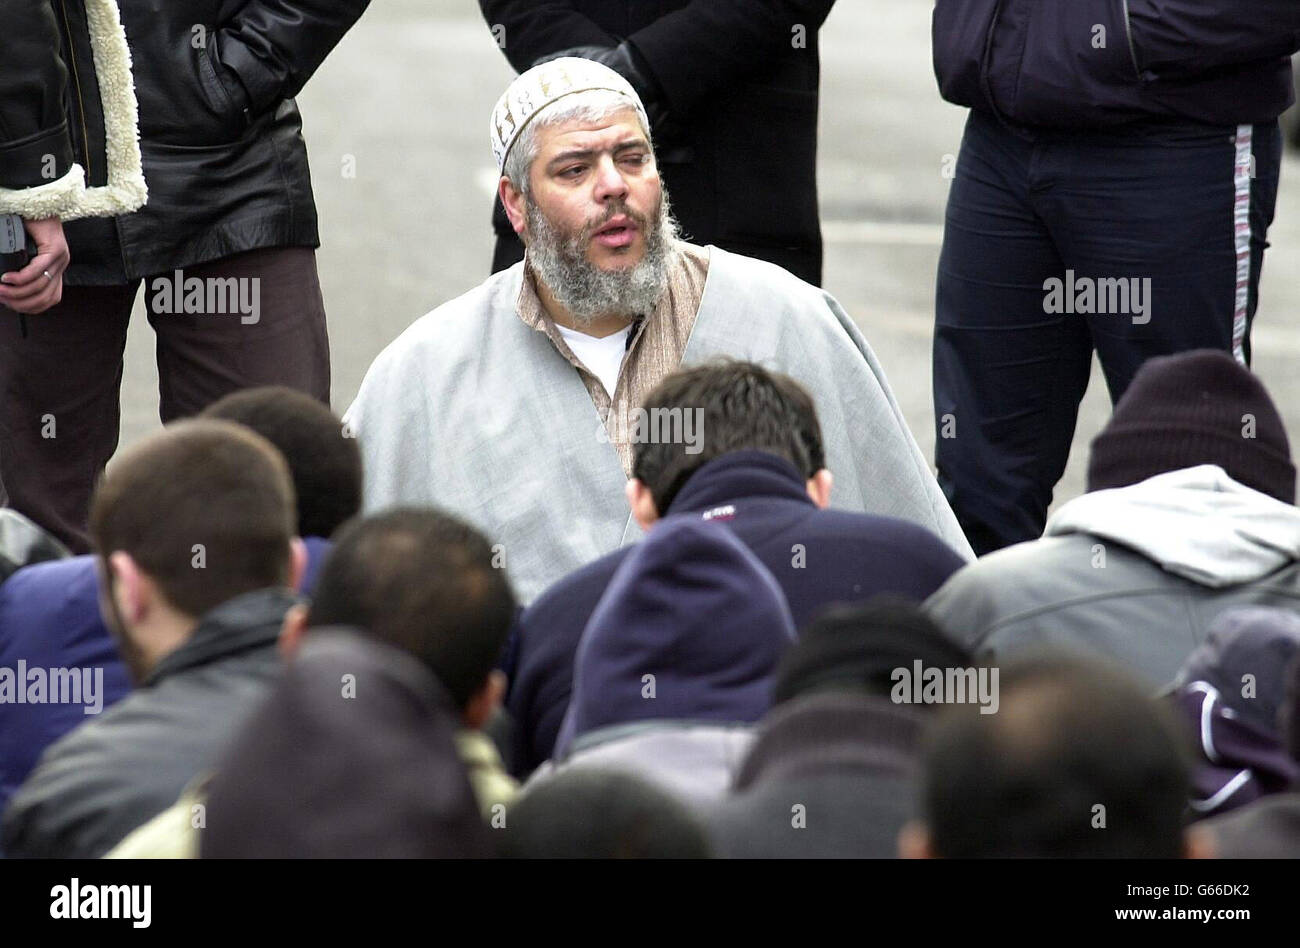 Il clero musulmano Abu Hamza pregava sulla strada fuori dalla Moschea di Finsbury Park, dove gli fu vietato parlare dalla Commissione della Carità. Il chierico è stato accusato di abusare della sua posizione per predicare il suo marchio radicale di Islam e fare sermoni infiammatori. Foto Stock